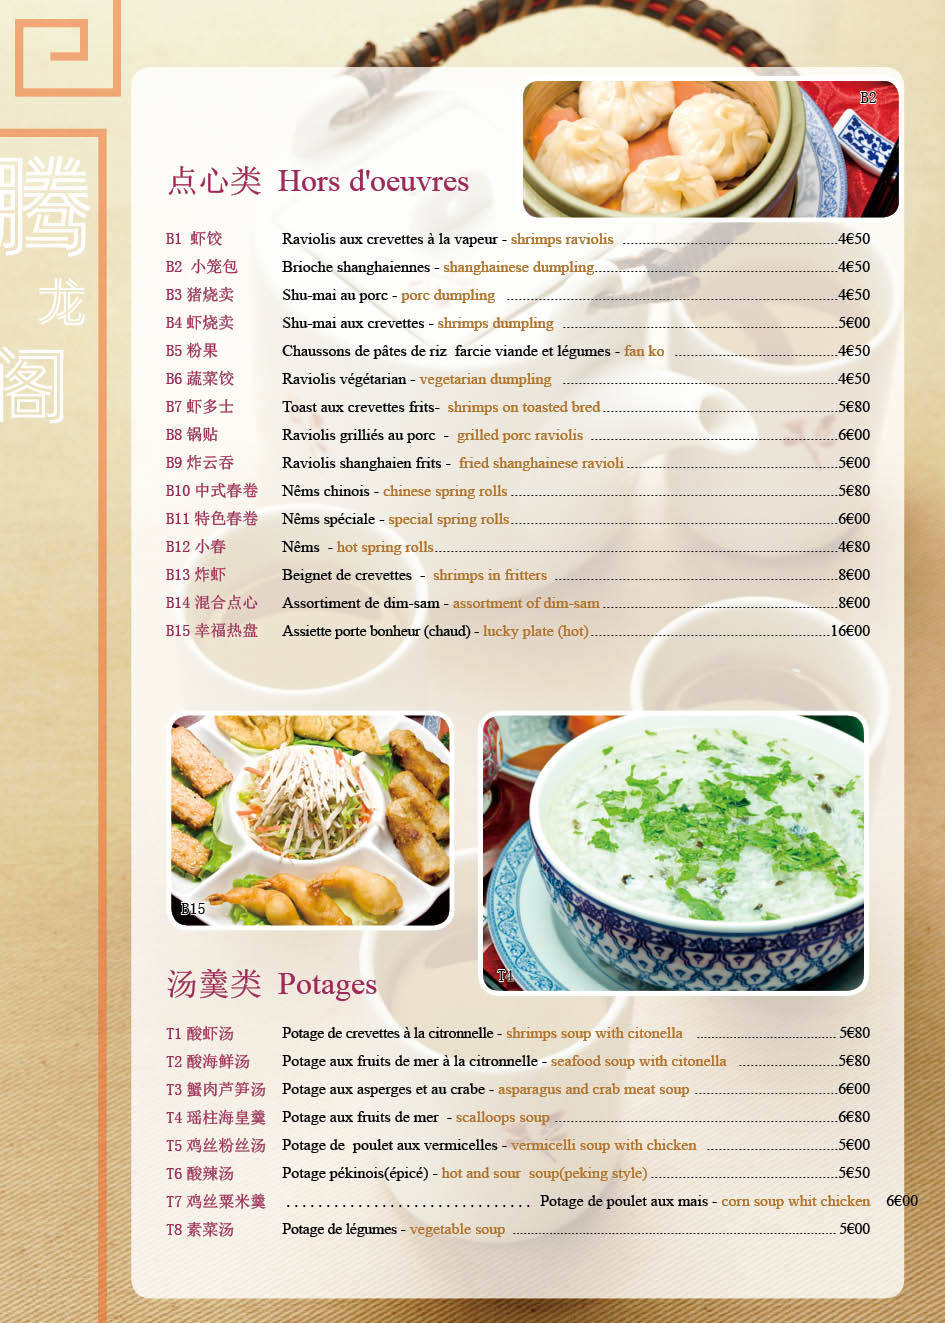 腾龙阁-法国中餐厅menu设计图1